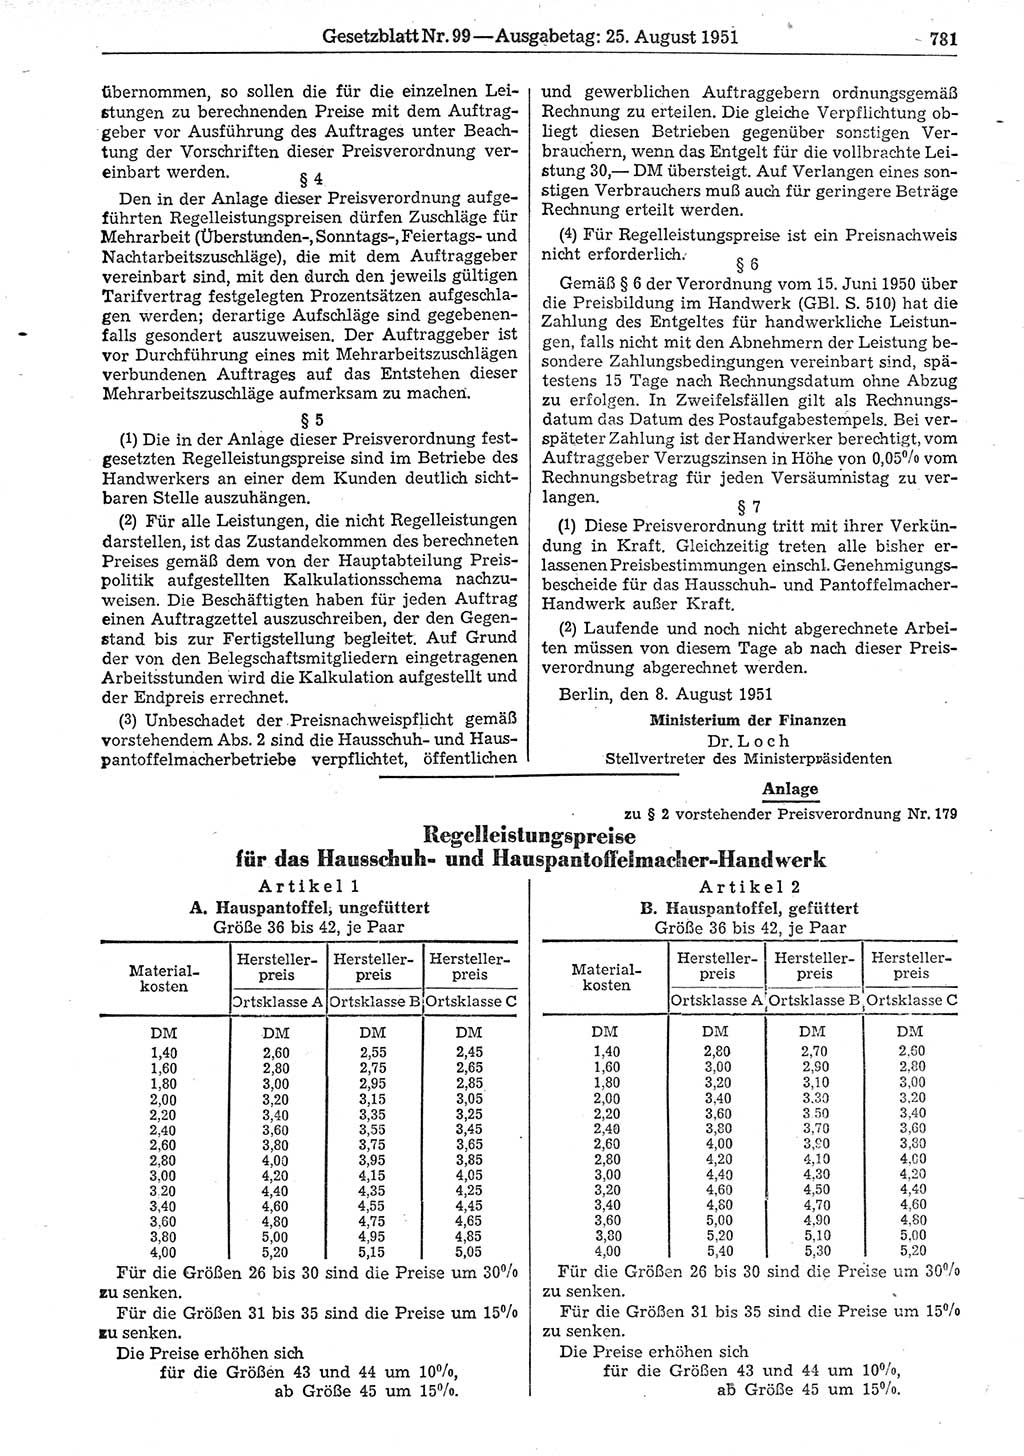 Gesetzblatt (GBl.) der Deutschen Demokratischen Republik (DDR) 1951, Seite 781 (GBl. DDR 1951, S. 781)